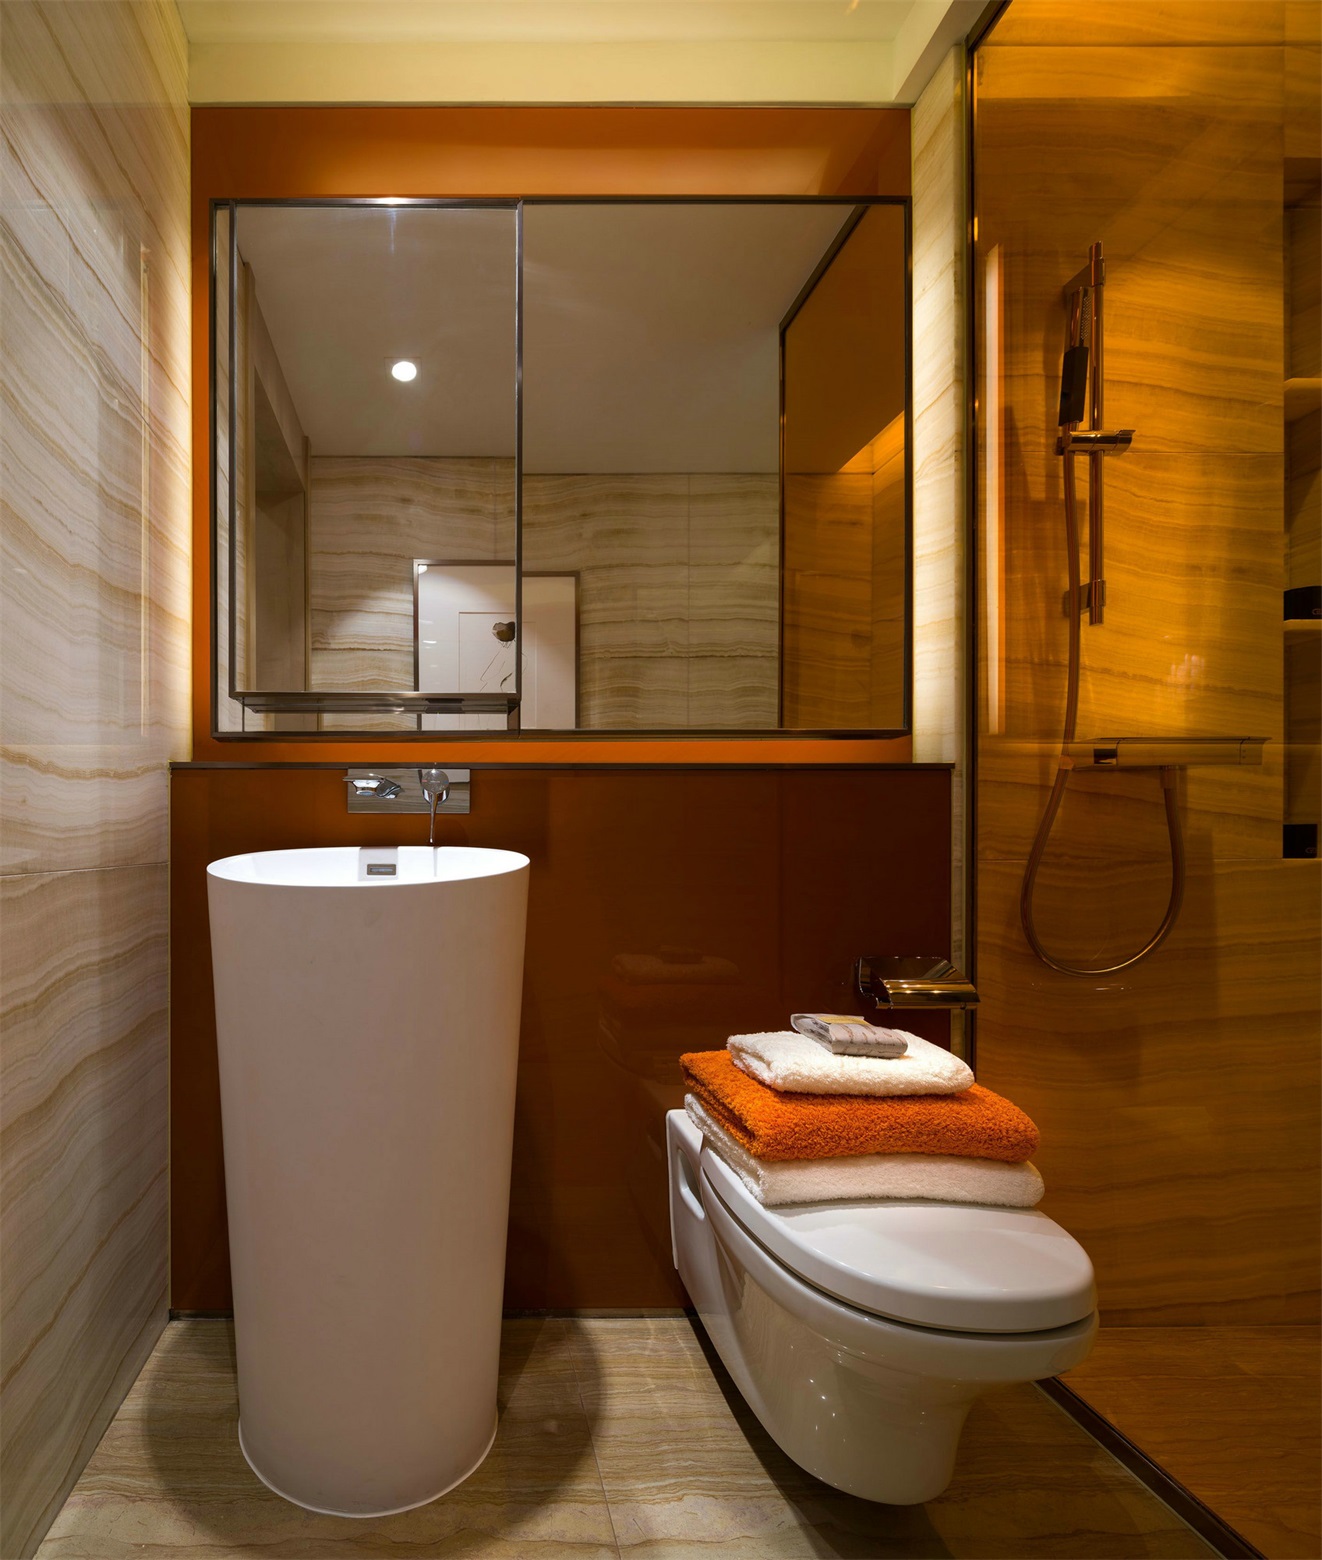 卫生间华丽感十足，通过色彩和材质本身的奢华质感，打造出洁净明亮的卫浴空间。